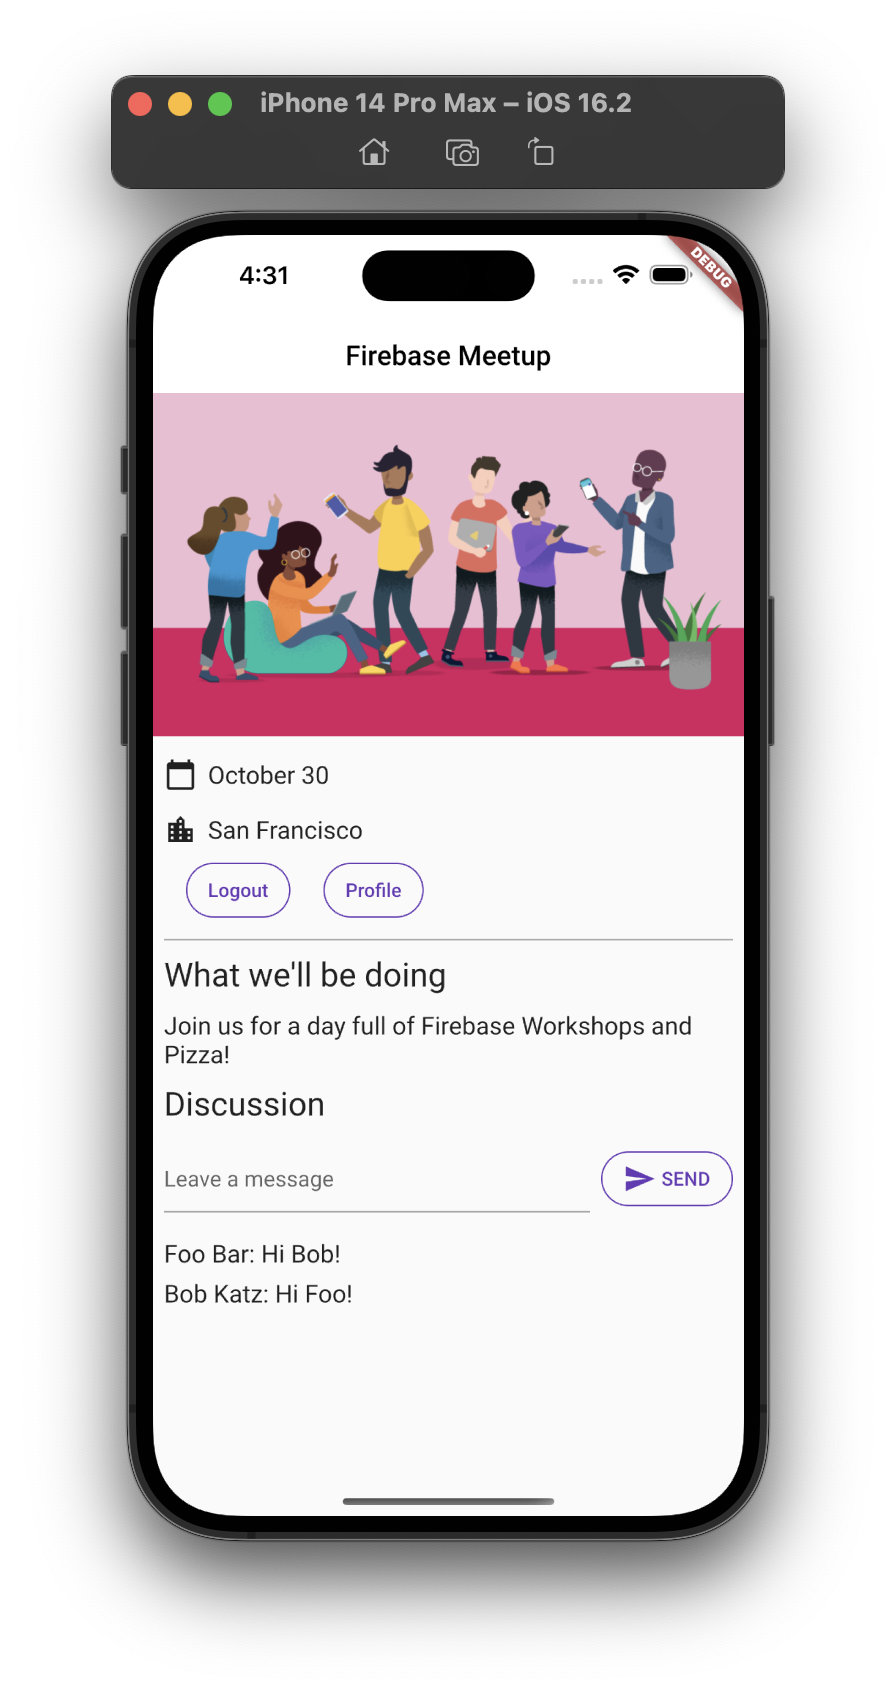 La pantalla principal de la app en iOS con integración de chat